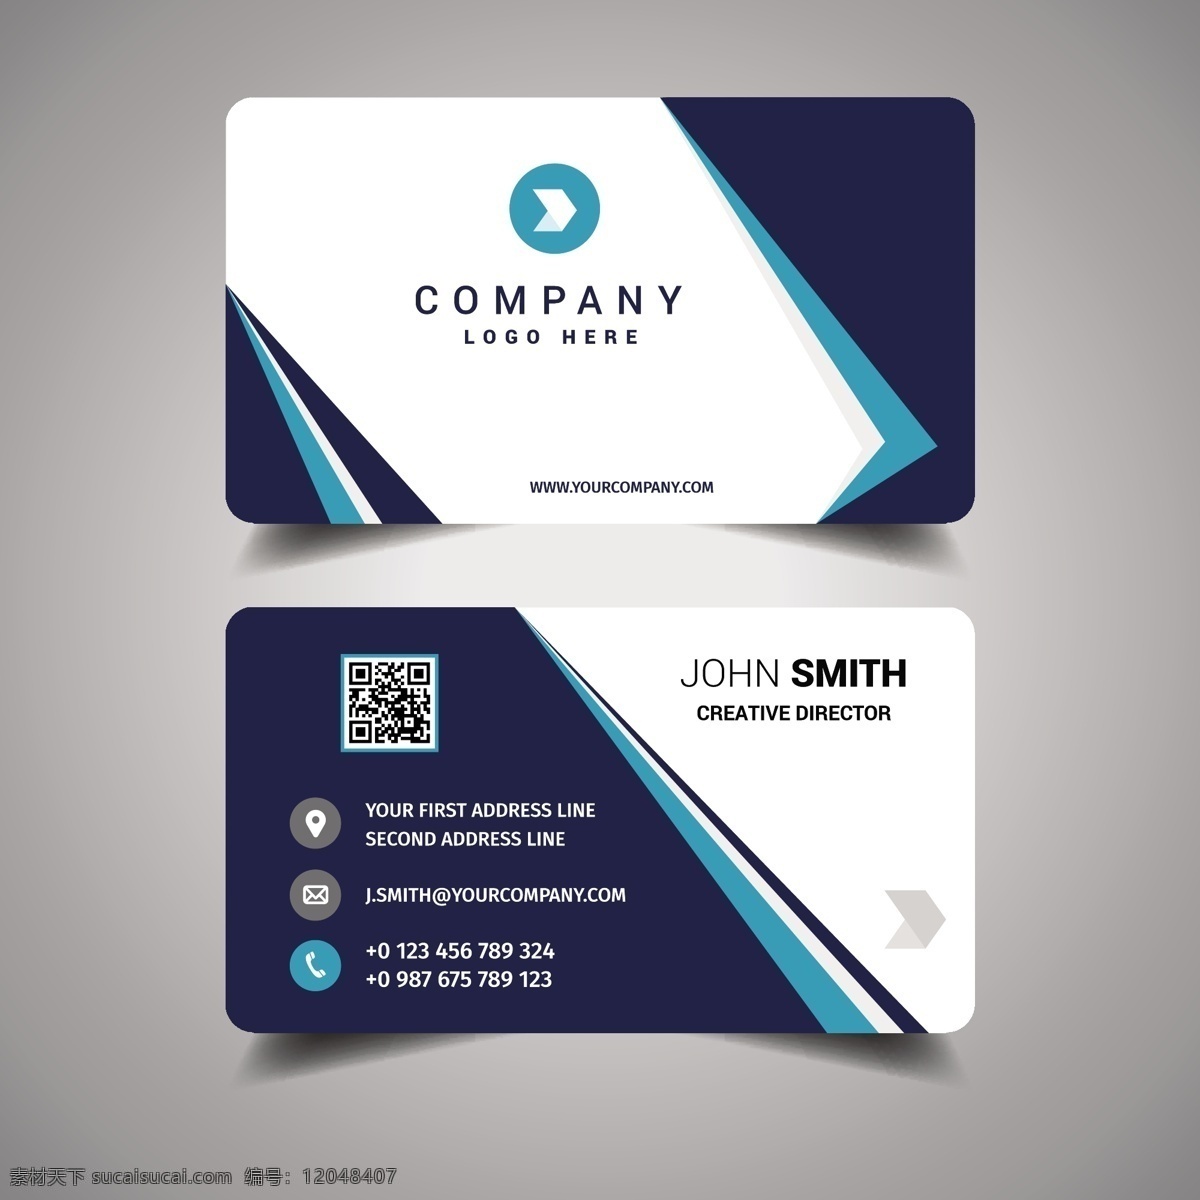 名片模板设计 商标 名片 商业 抽象 卡片 模板 蓝色 办公室 颜色 展示 文具 公司 抽象标志 企业标识 现代 身份 身份证